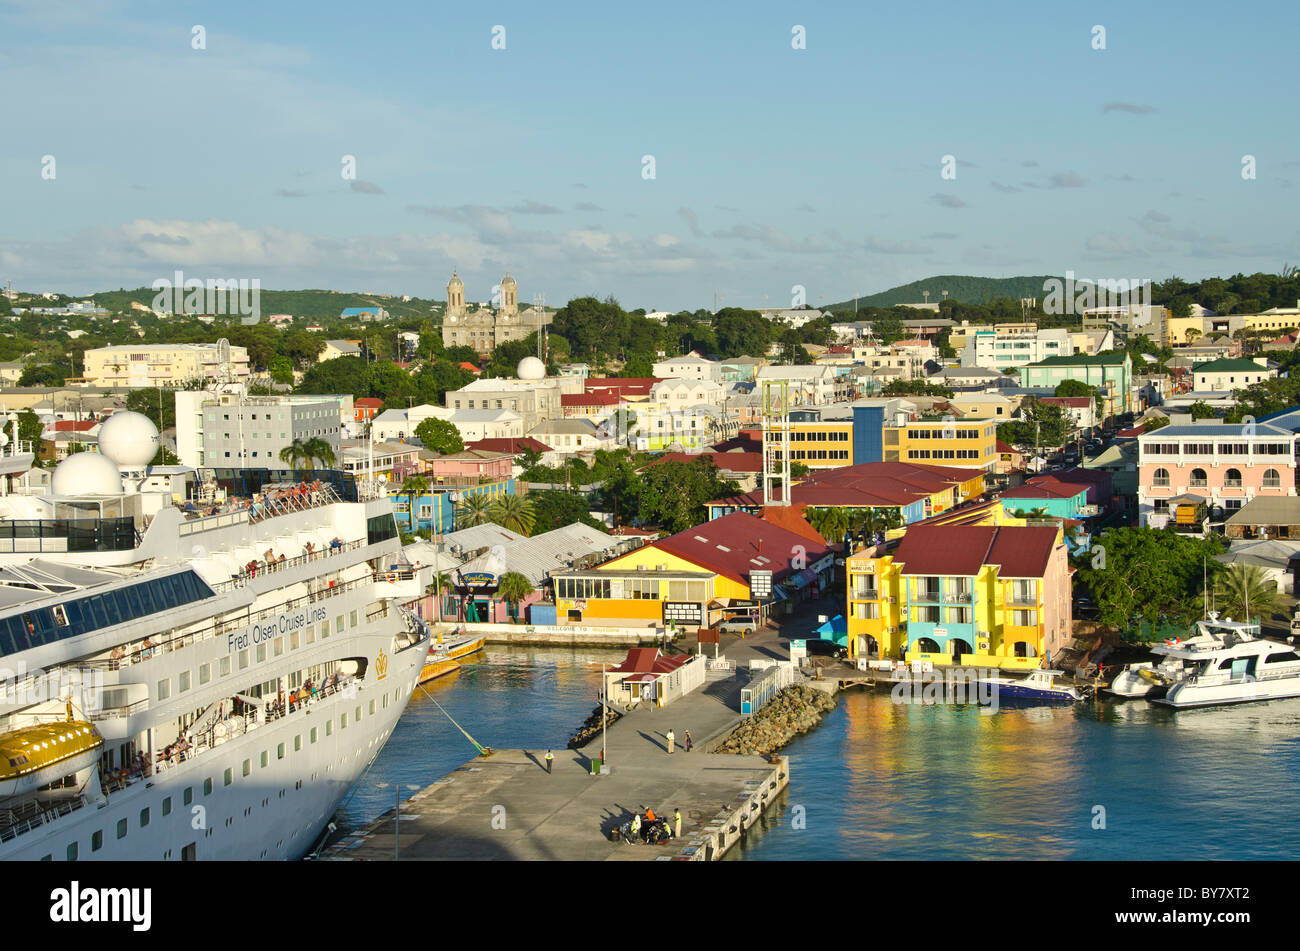 Antigua Falmouth port de croisière navire amarré à quai et la ville de couleurs vives de navire de croisière des Caraïbes Banque D'Images